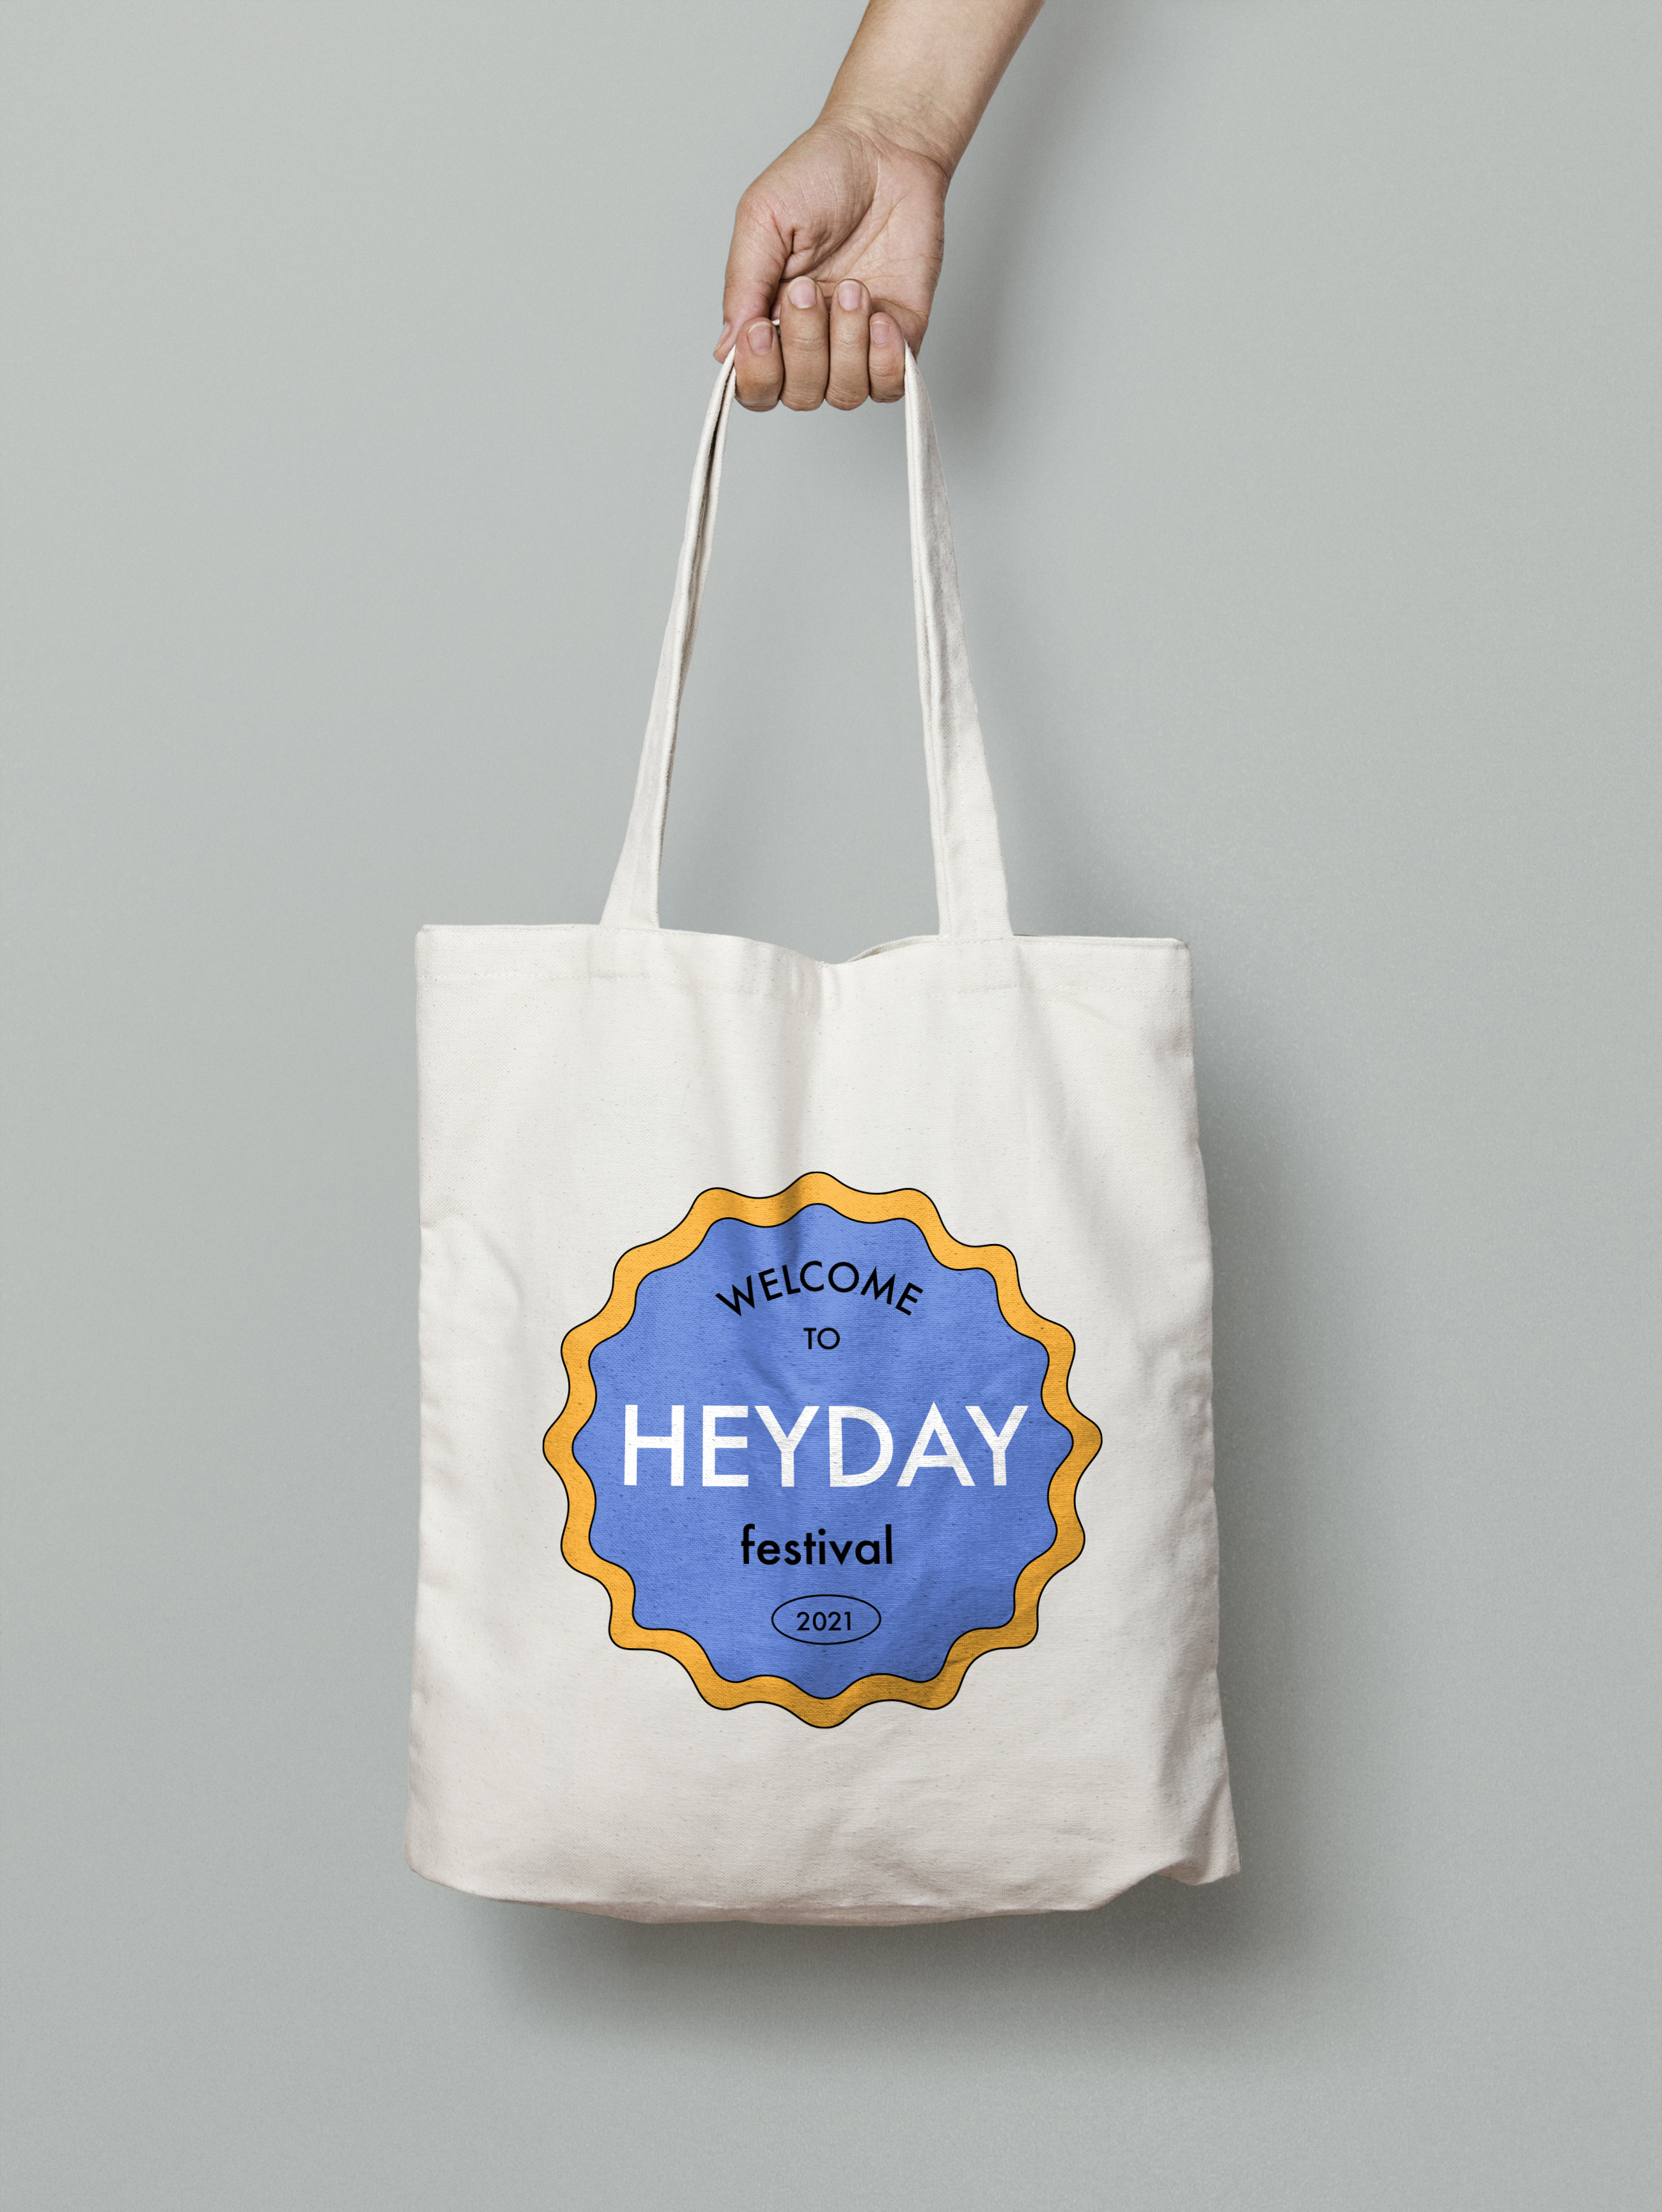 HEYDAY tote bag